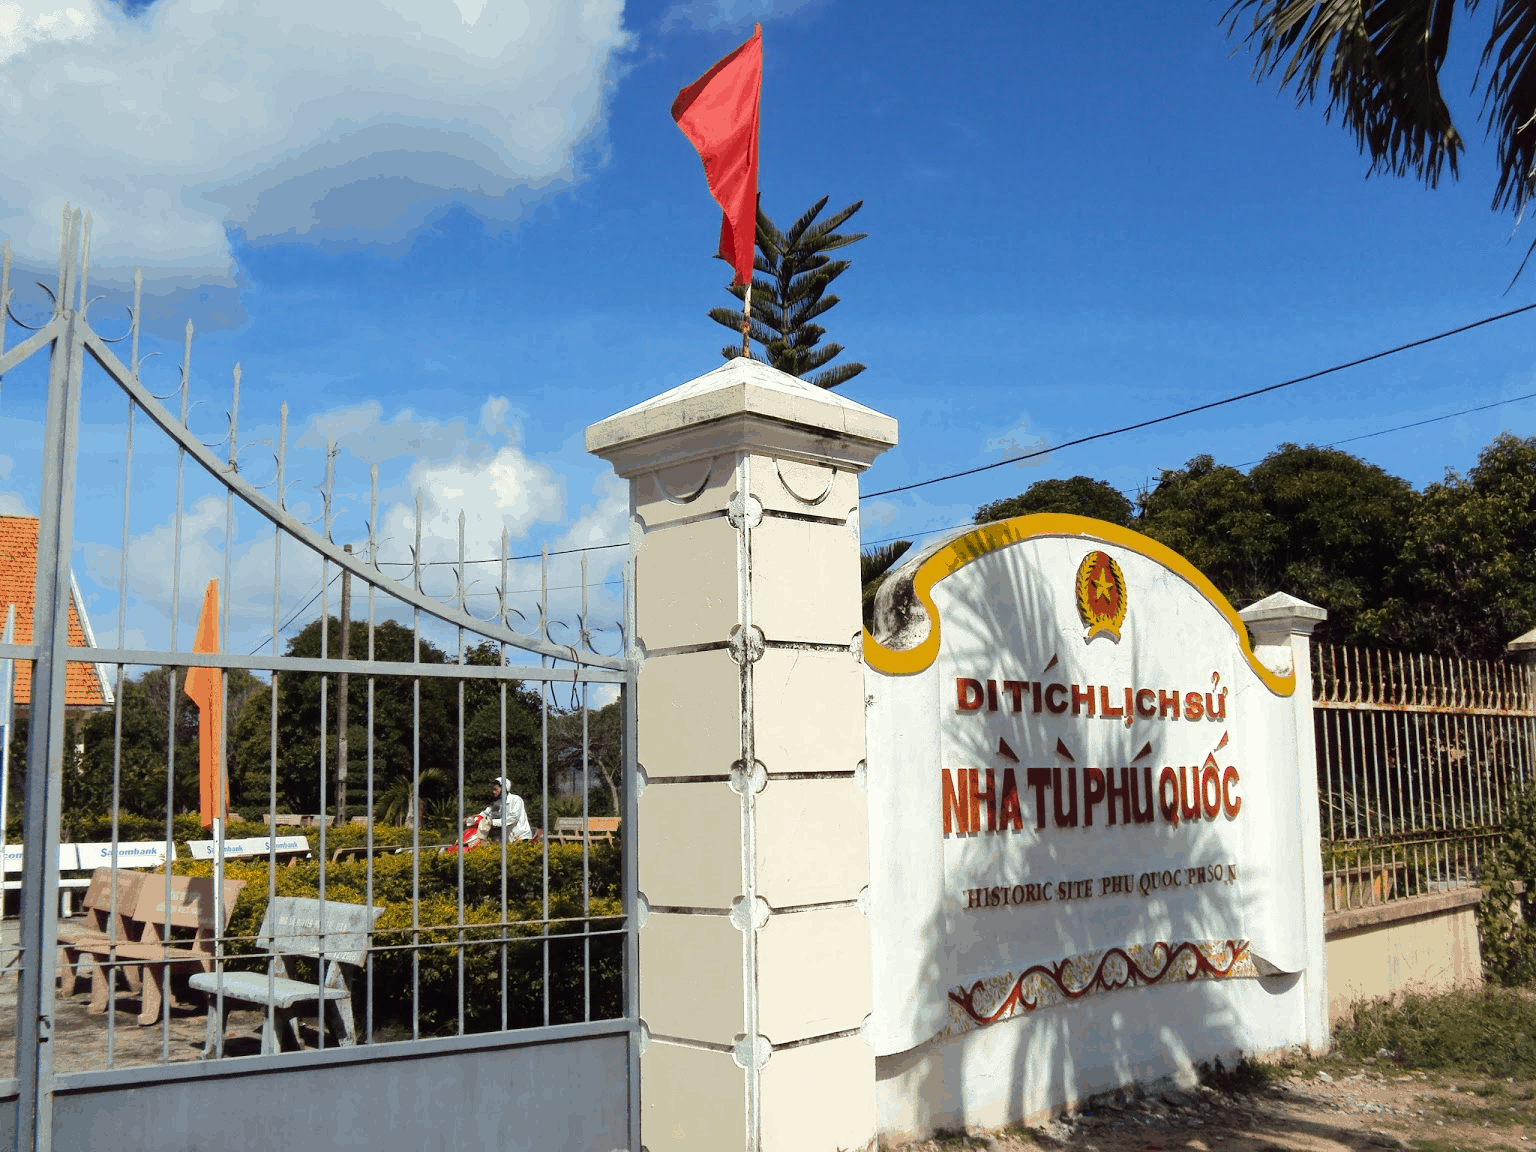 Nhà tù Phú Quốc - minh chứng lịch sử hào hùng tại Nam đảo Phú Quốc